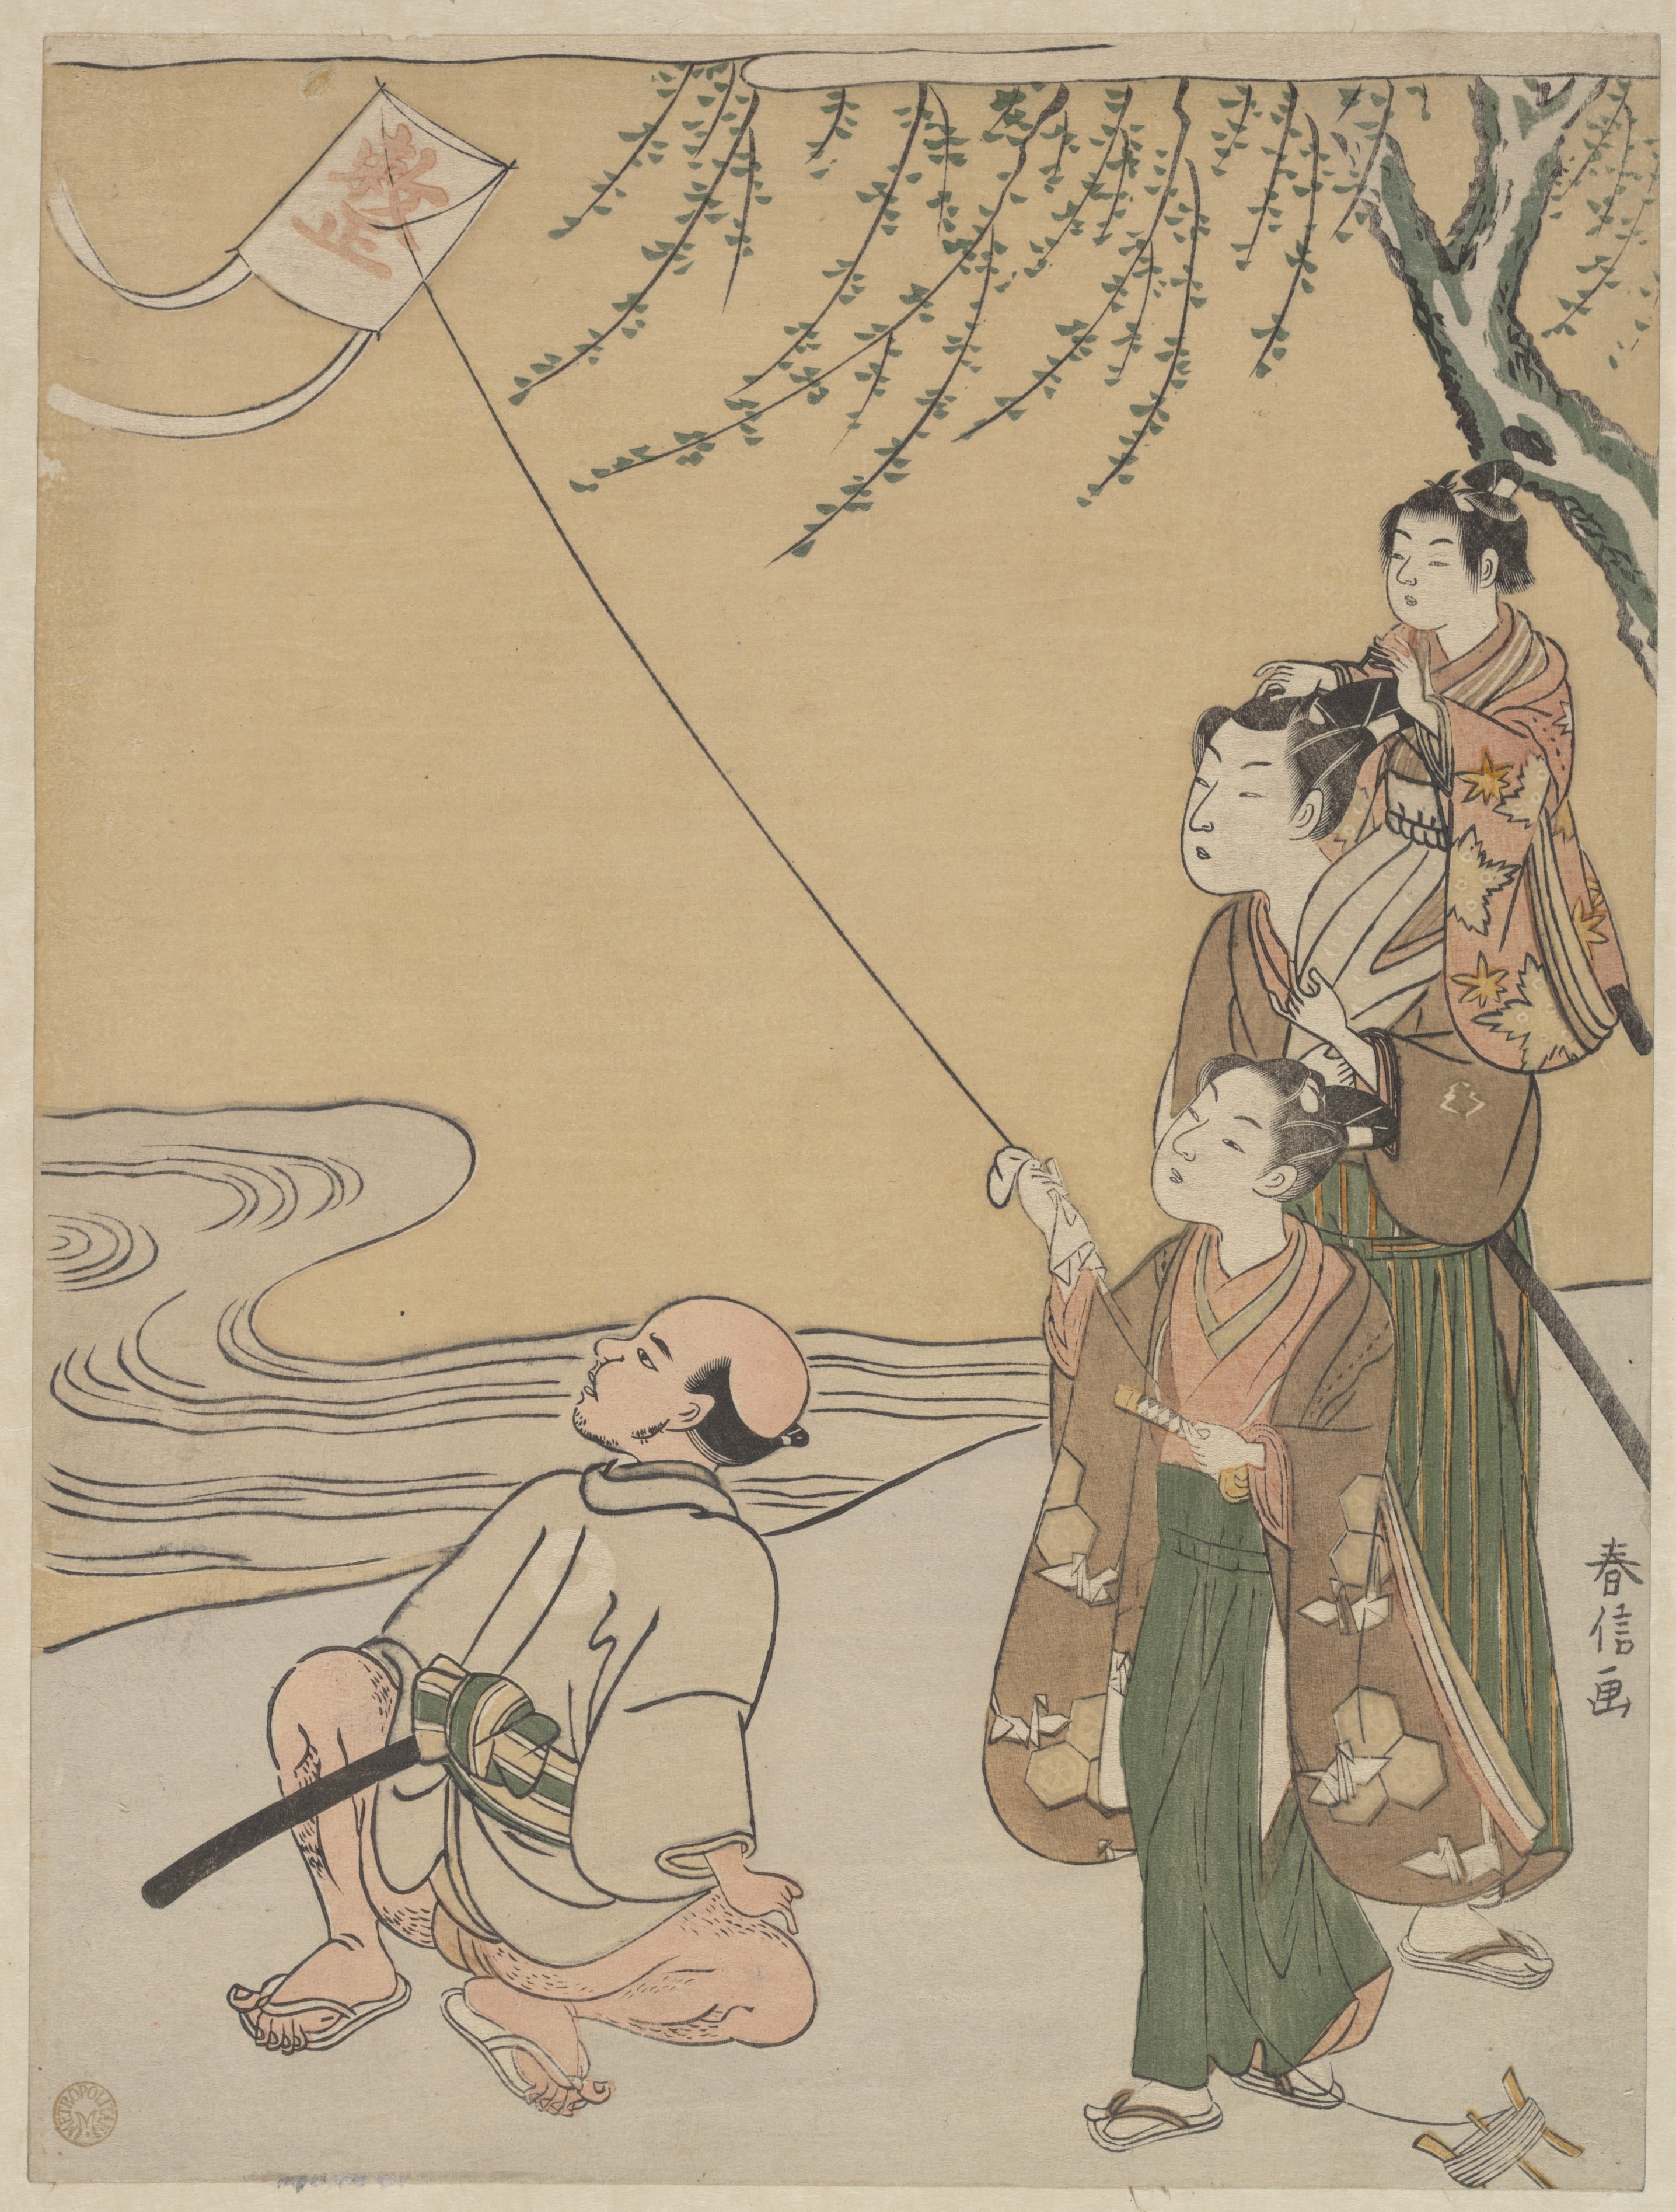 Vliegeren by Suzuki Harunobu - 1766 - 27,3 x 20,6 cm 